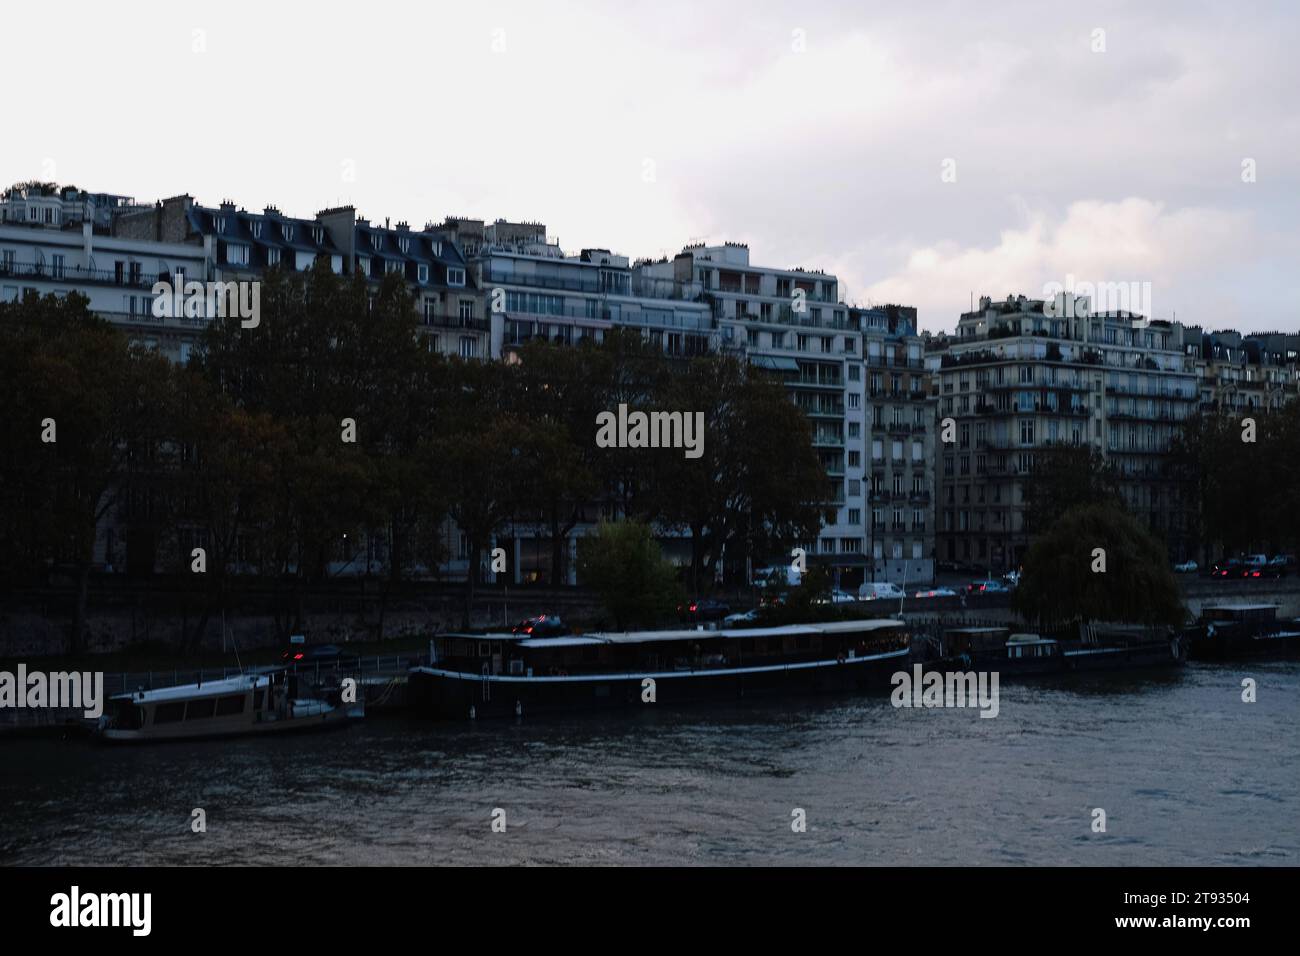 Skyline de Paris avec des bâtiments, des bateaux sur l'eau et un ciel nuageux dans le 15e arrondissement Banque D'Images